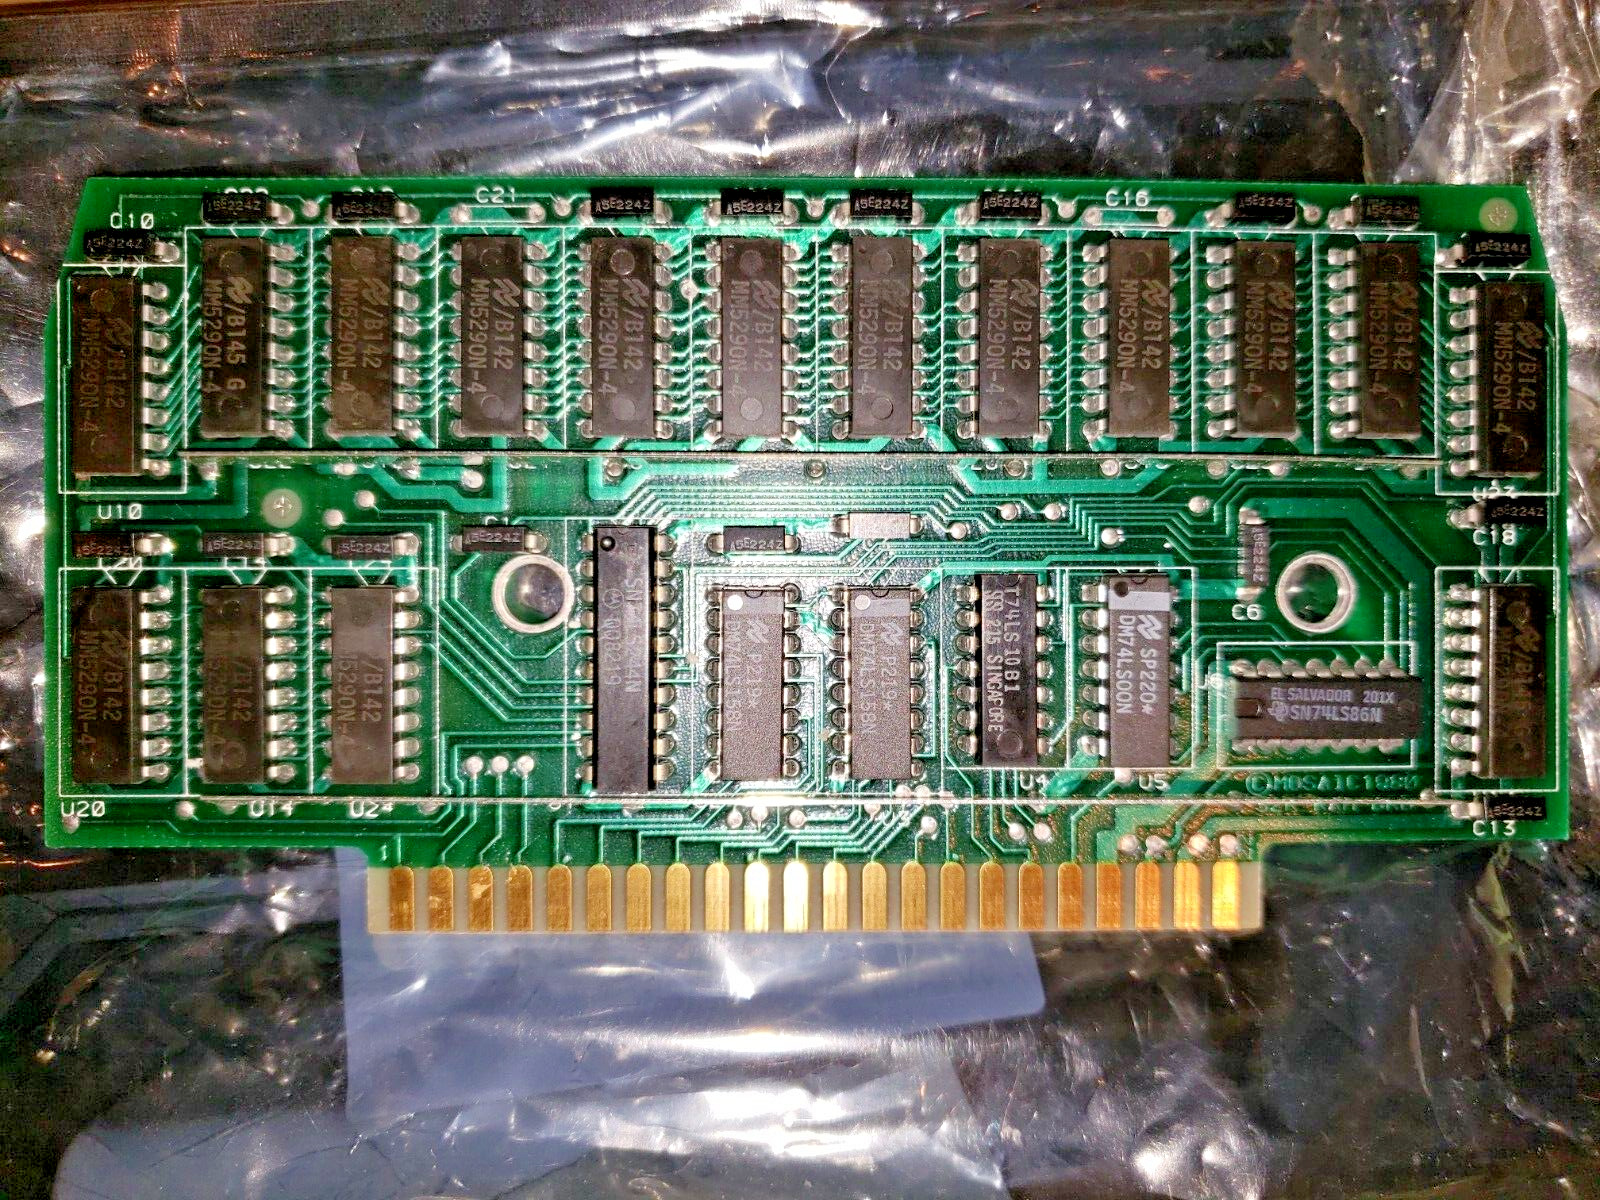 Mosaic 32k ram card for Atari 400 or Atari 800 computer 